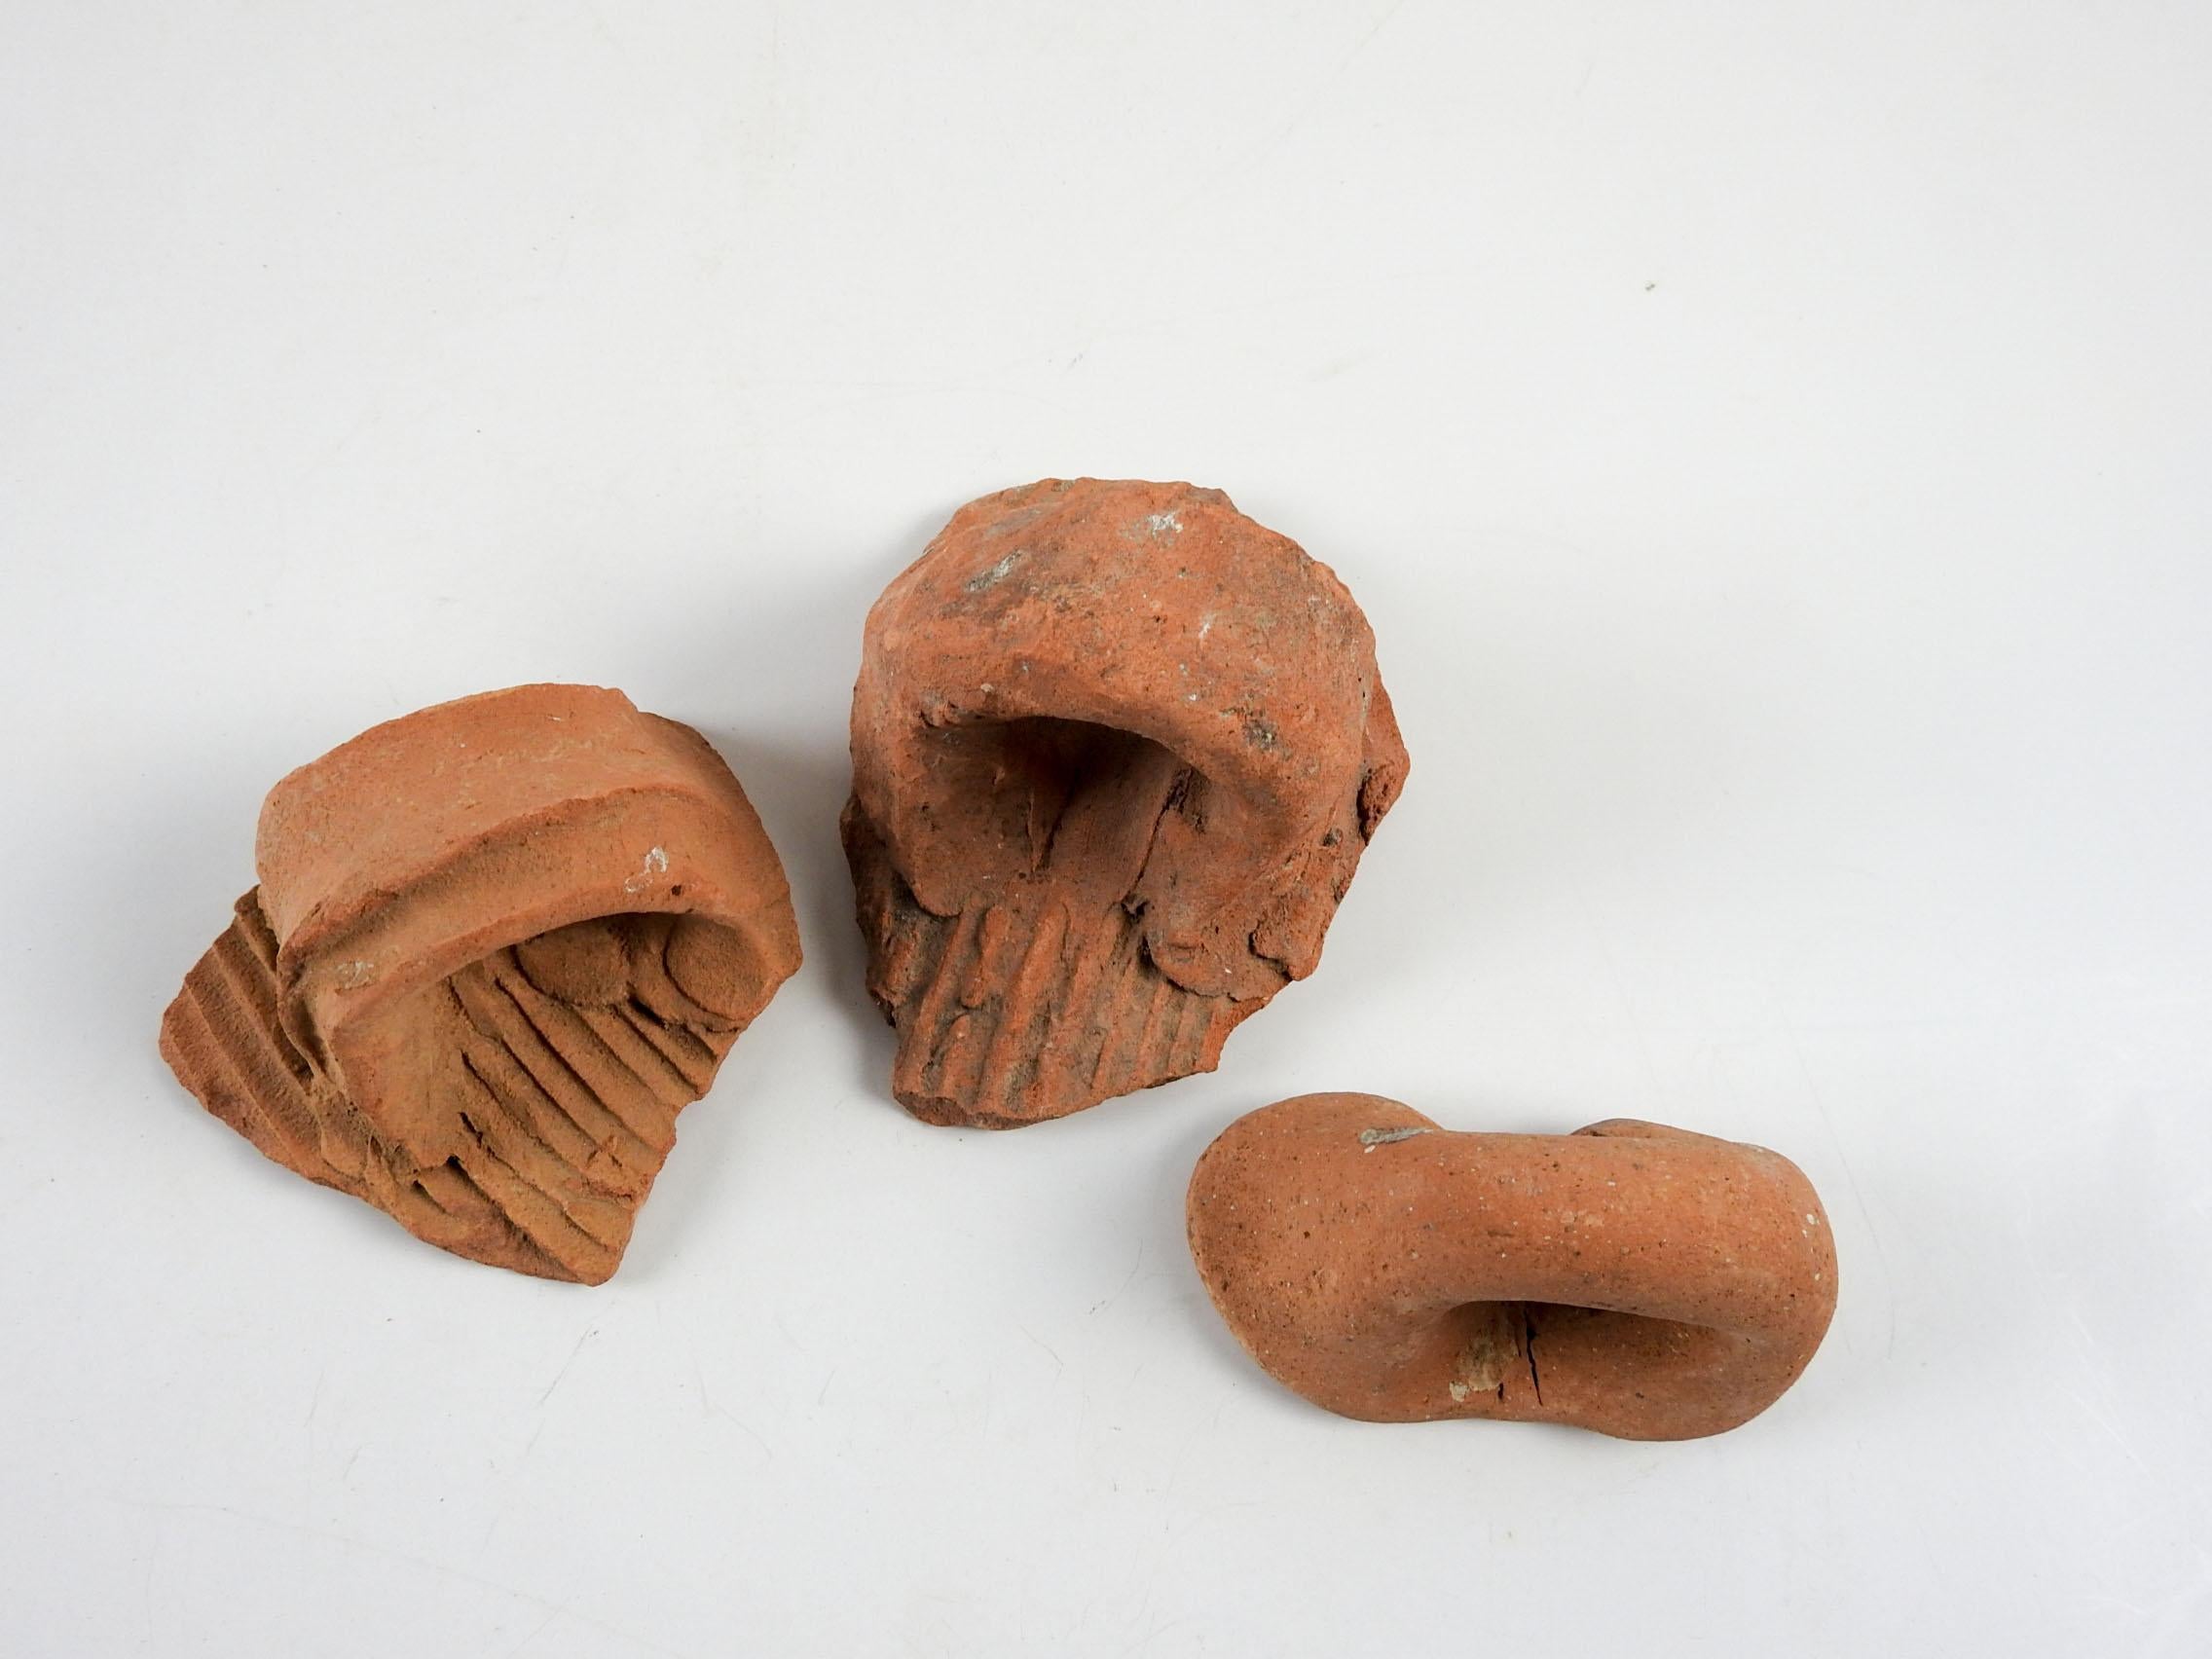 Groupe de 3 fragments d'anses de poterie en terre cuite de la Méditerranée antique . J'ai plusieurs ensembles de ces, les couleurs varient de brunâtre à rougeâtre, la taille et l'usure globale variera. Le plus grand fragment mesure environ 4 